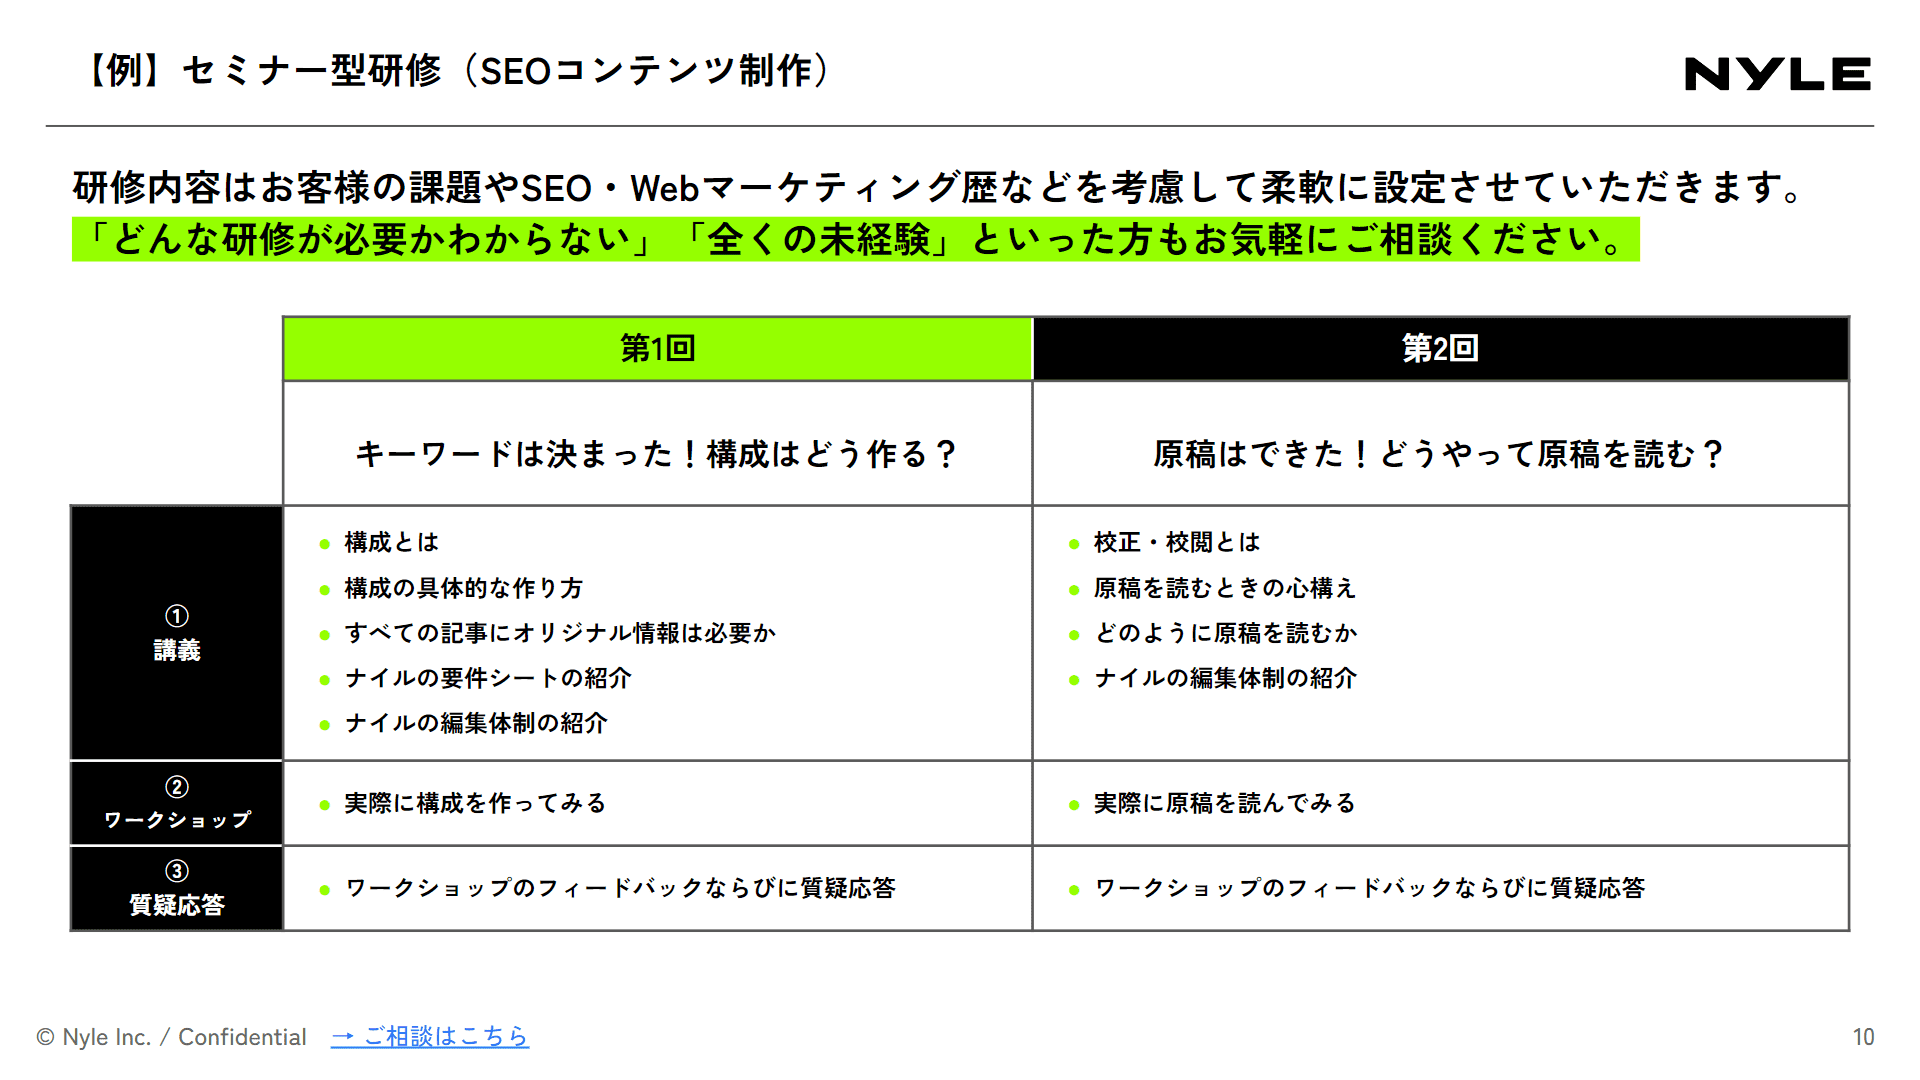 SEO研修サービス紹介資料スライドサンプル2